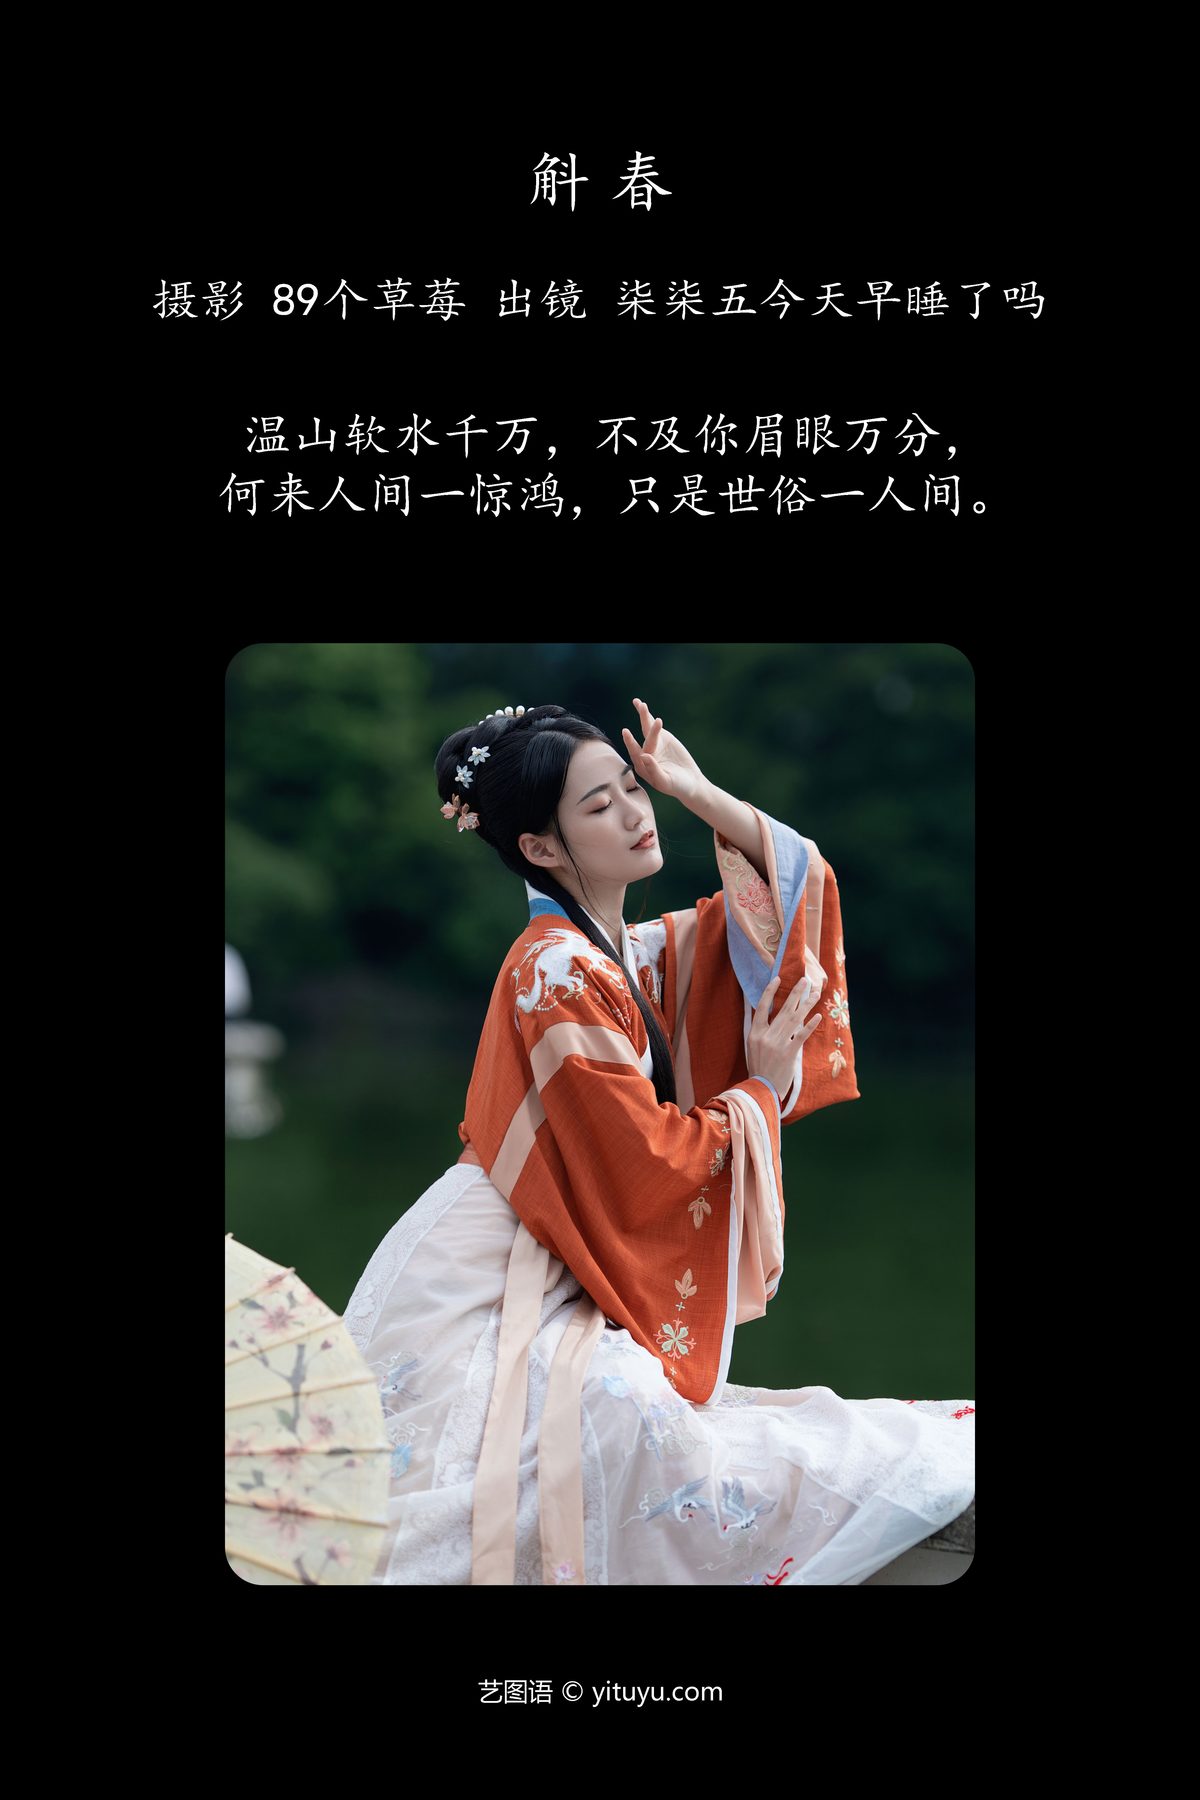 YiTuYu艺图语 Vol 4405 Qi Qi Wu Jin Tian Zao Shu Le Ma 0001 4506011752.jpg